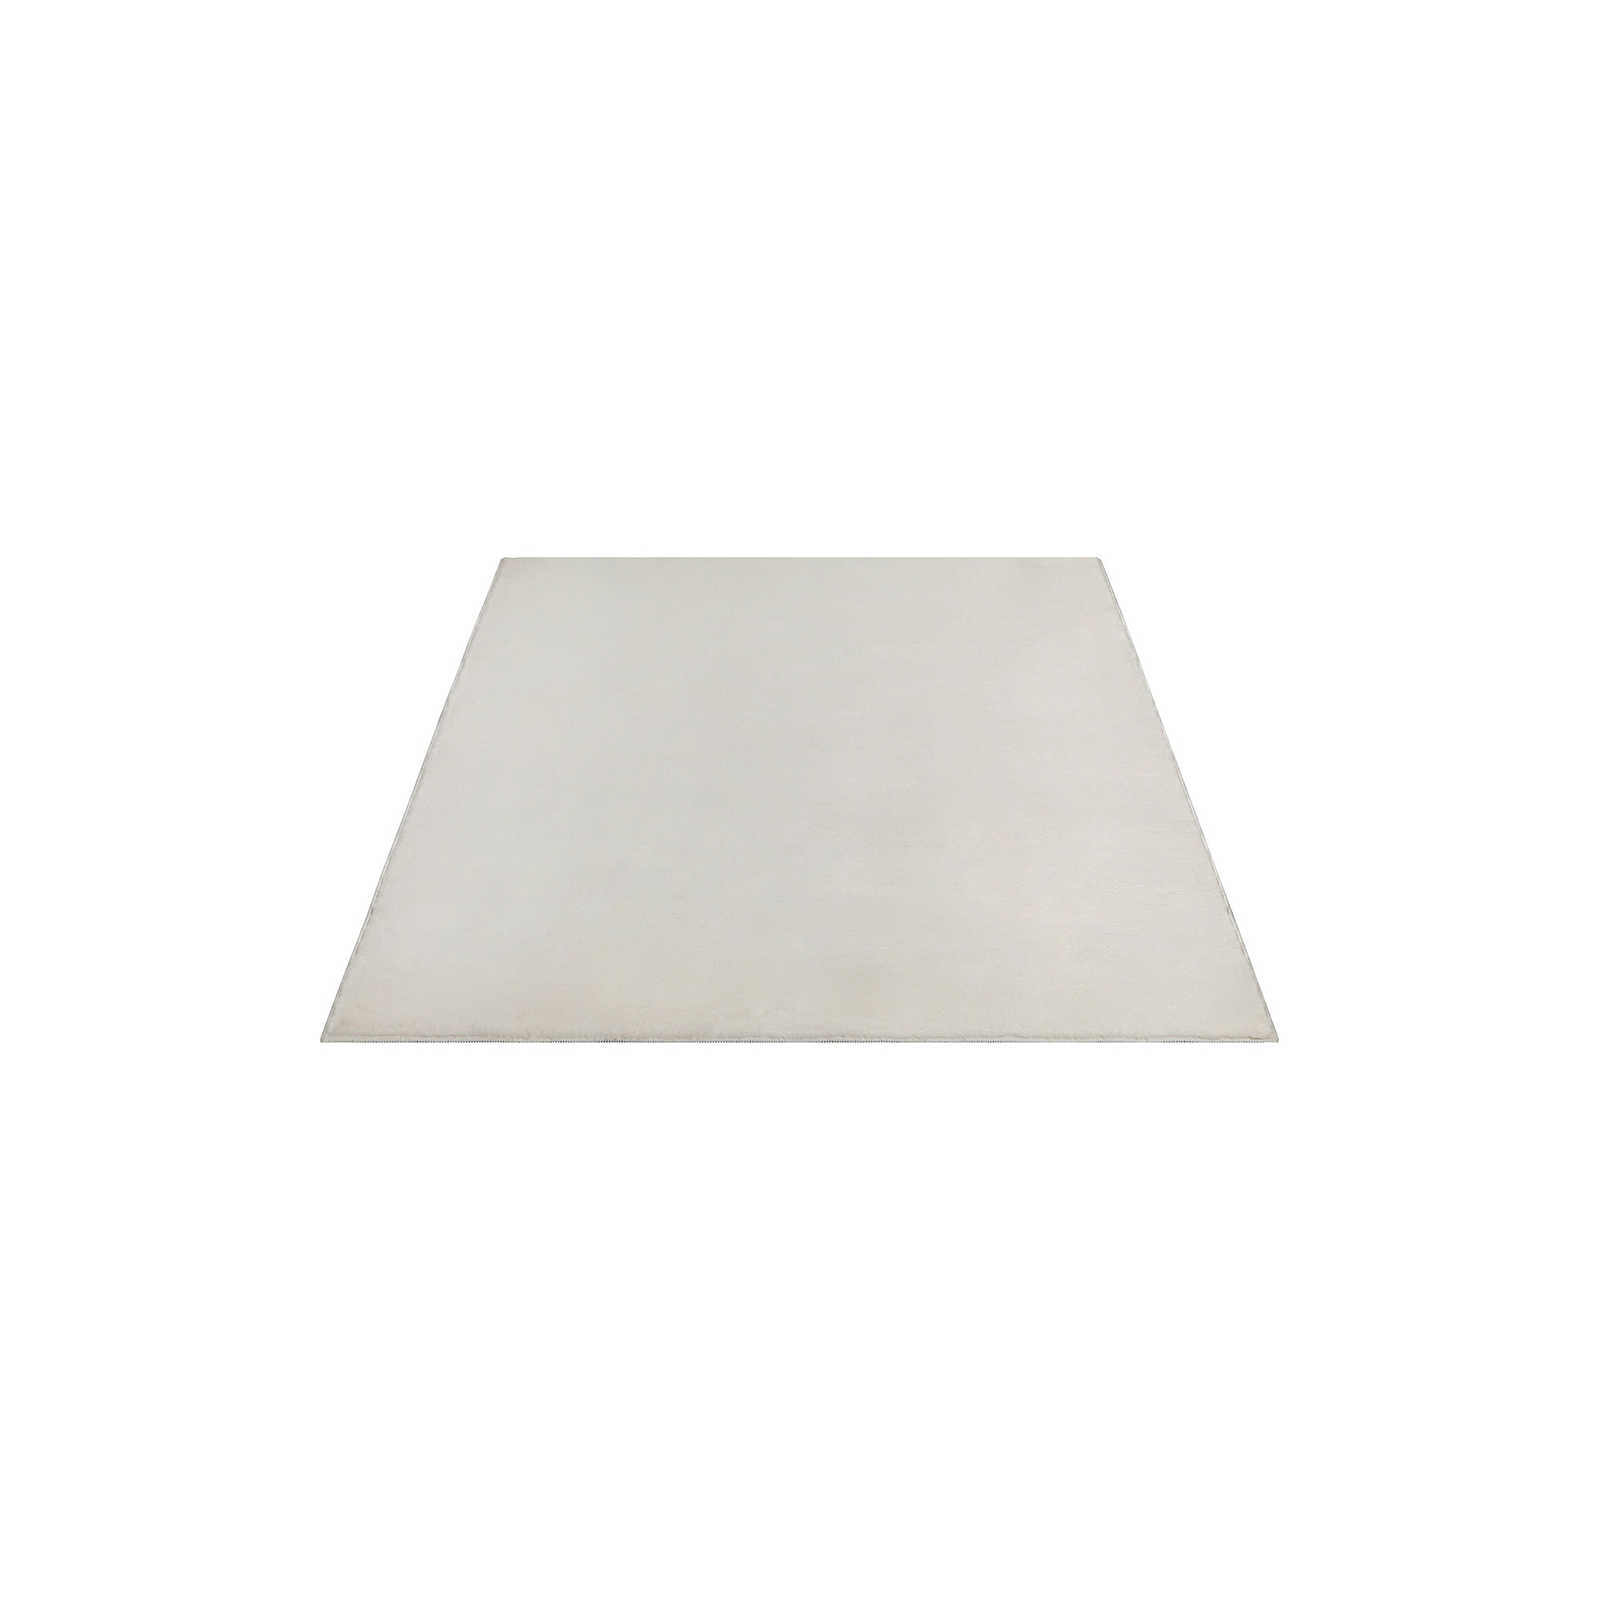 Zachtpolig tapijt in crème - 200 x 140 cm
